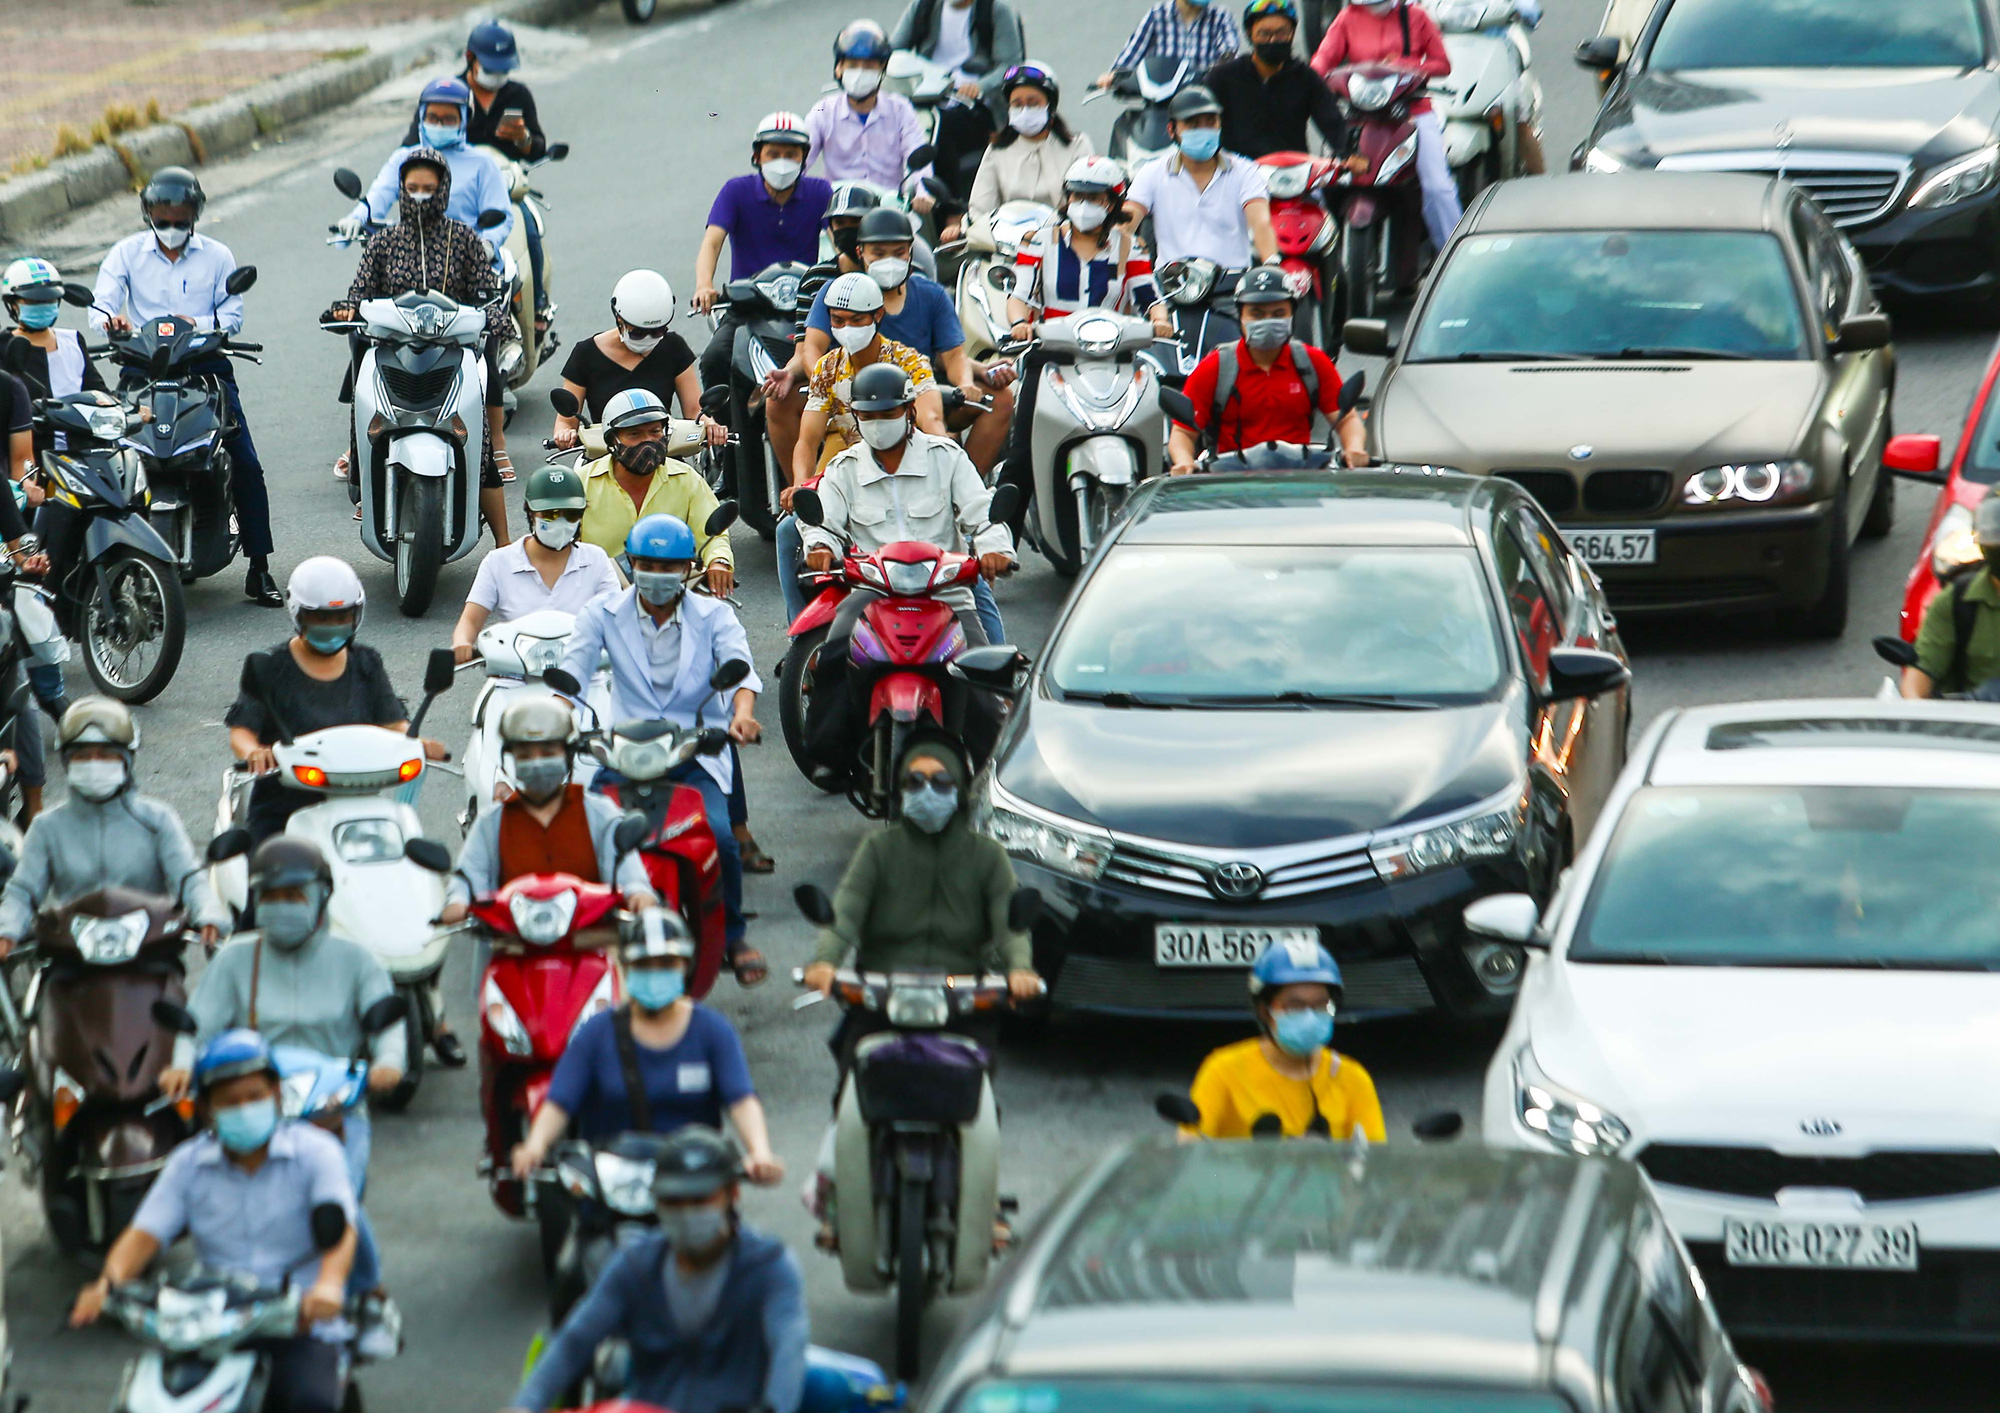 CLIP: Đường phố Hà Nội bất ngờ đông hơn trong ngày tròn 1 tháng giãn cách xã hội - Ảnh 8.